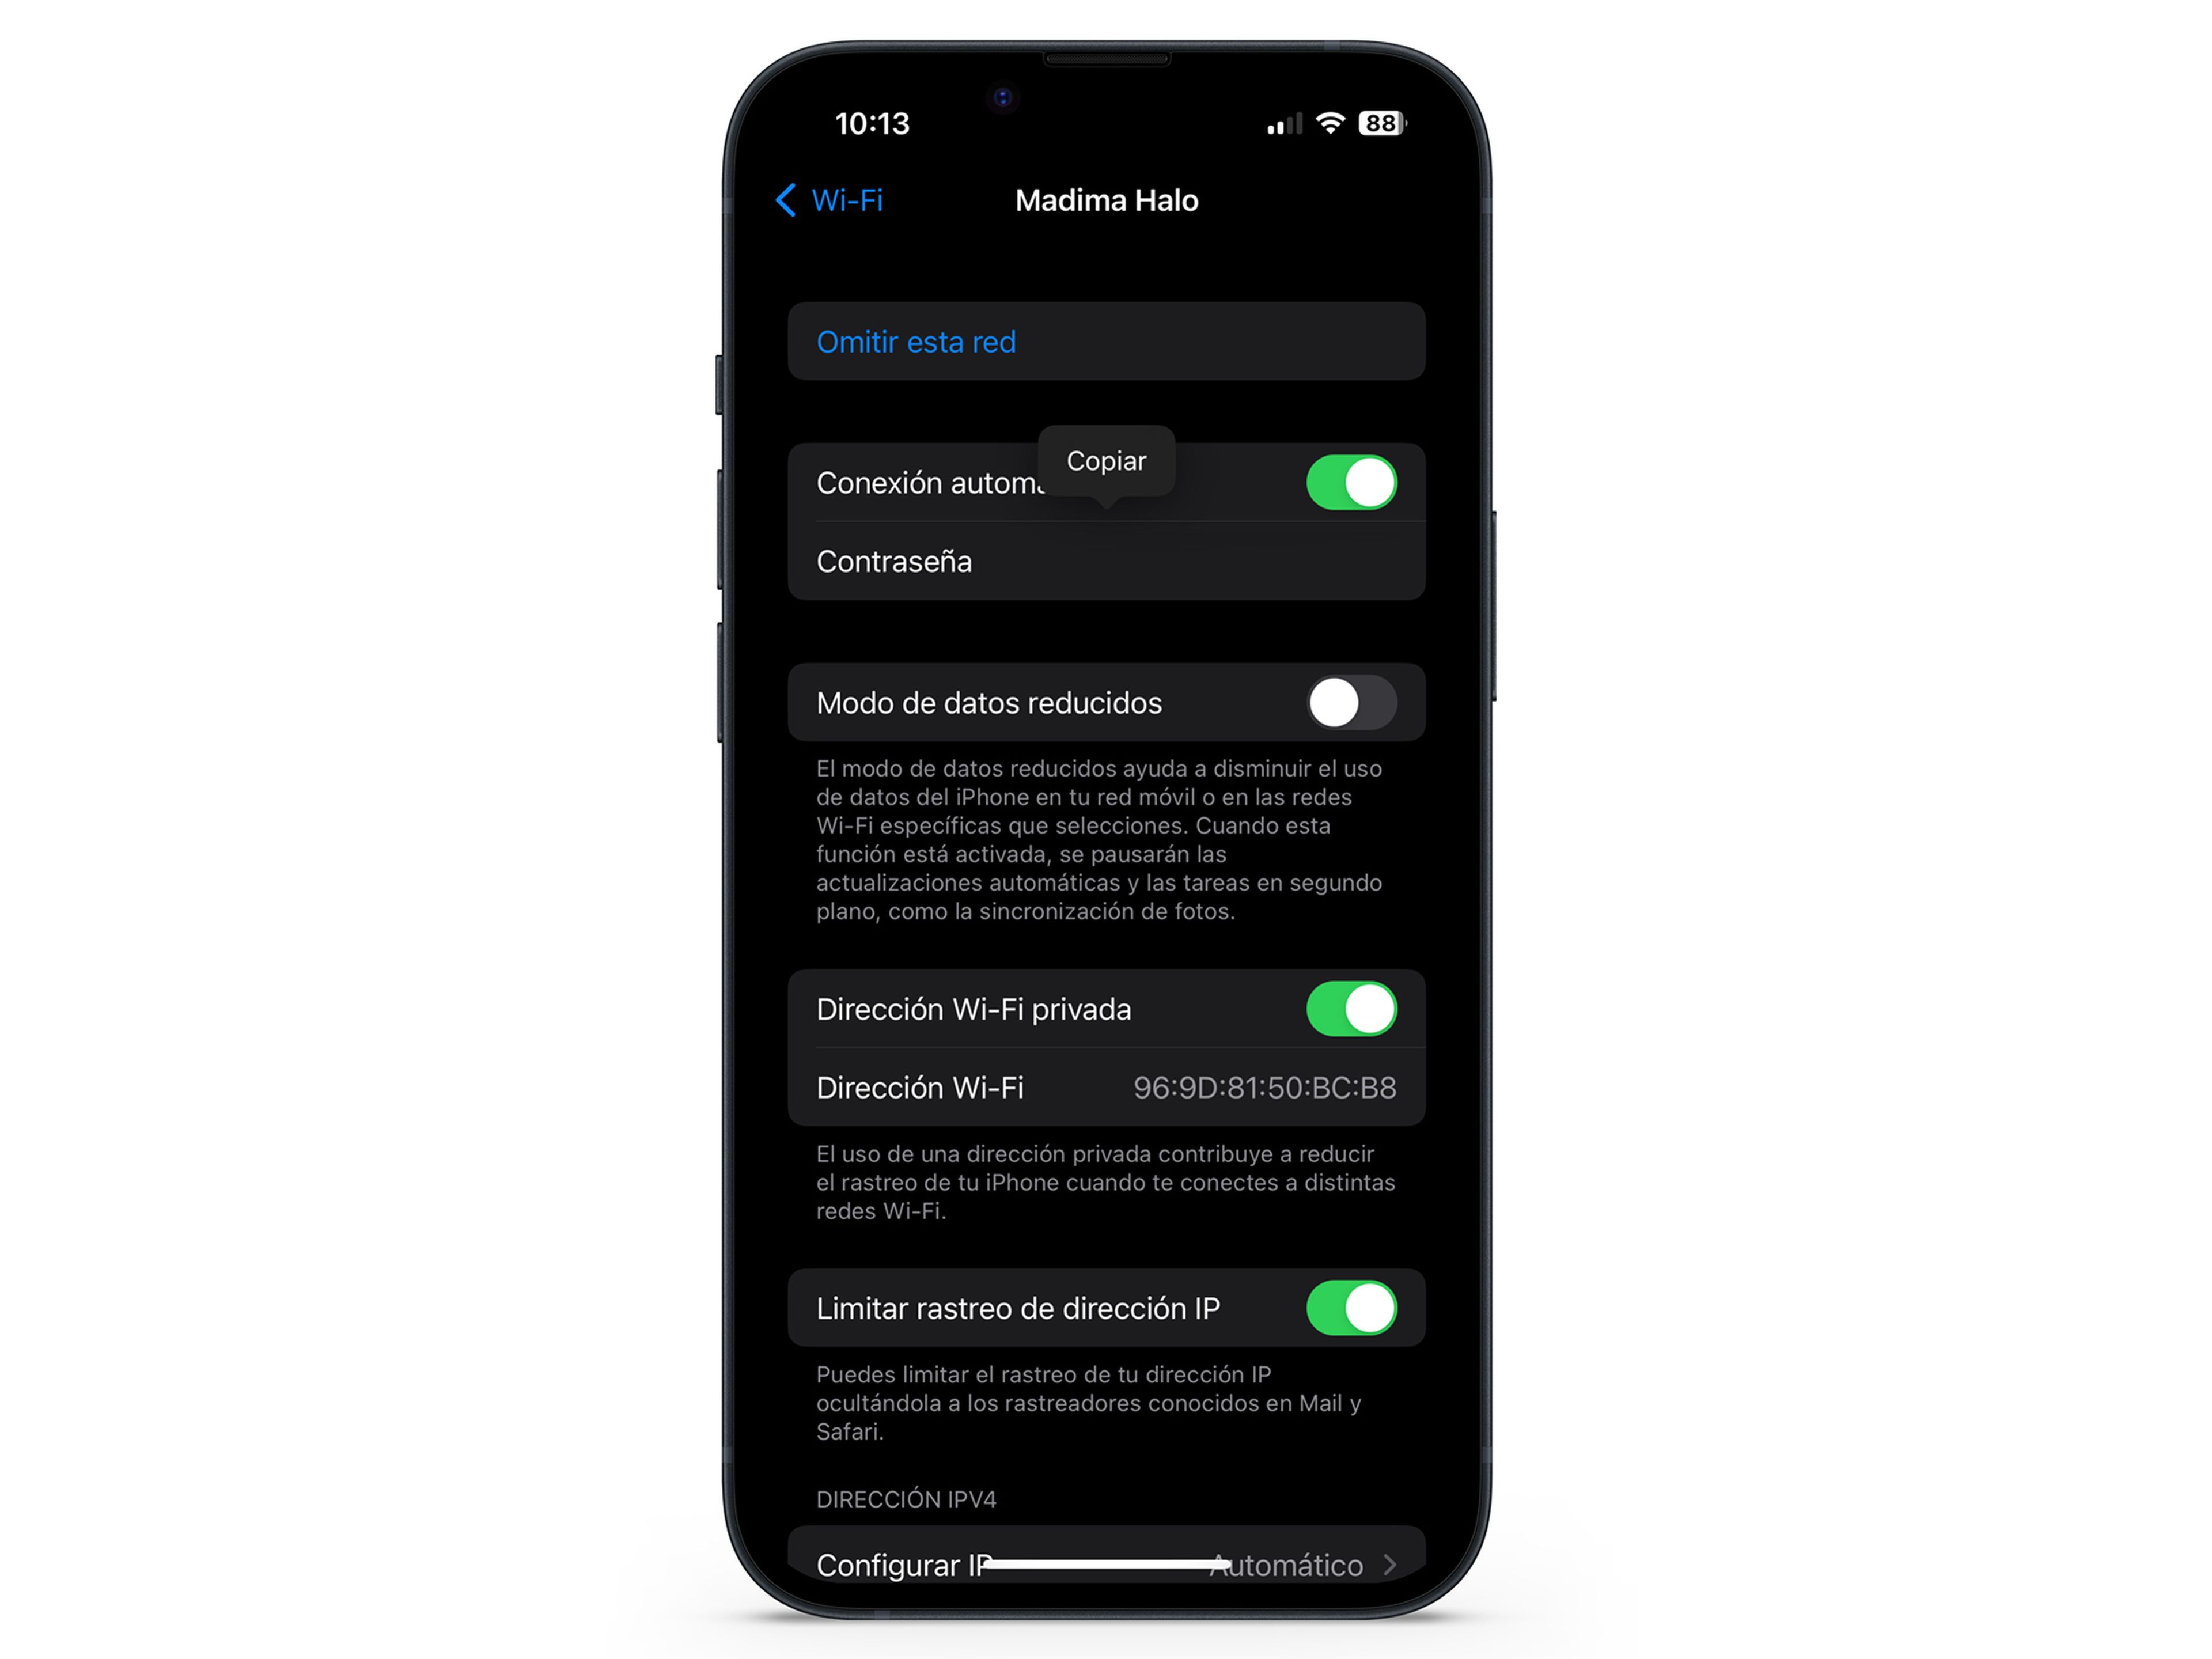 Cómo saber la contraseña del WiFi en iPhone iOS